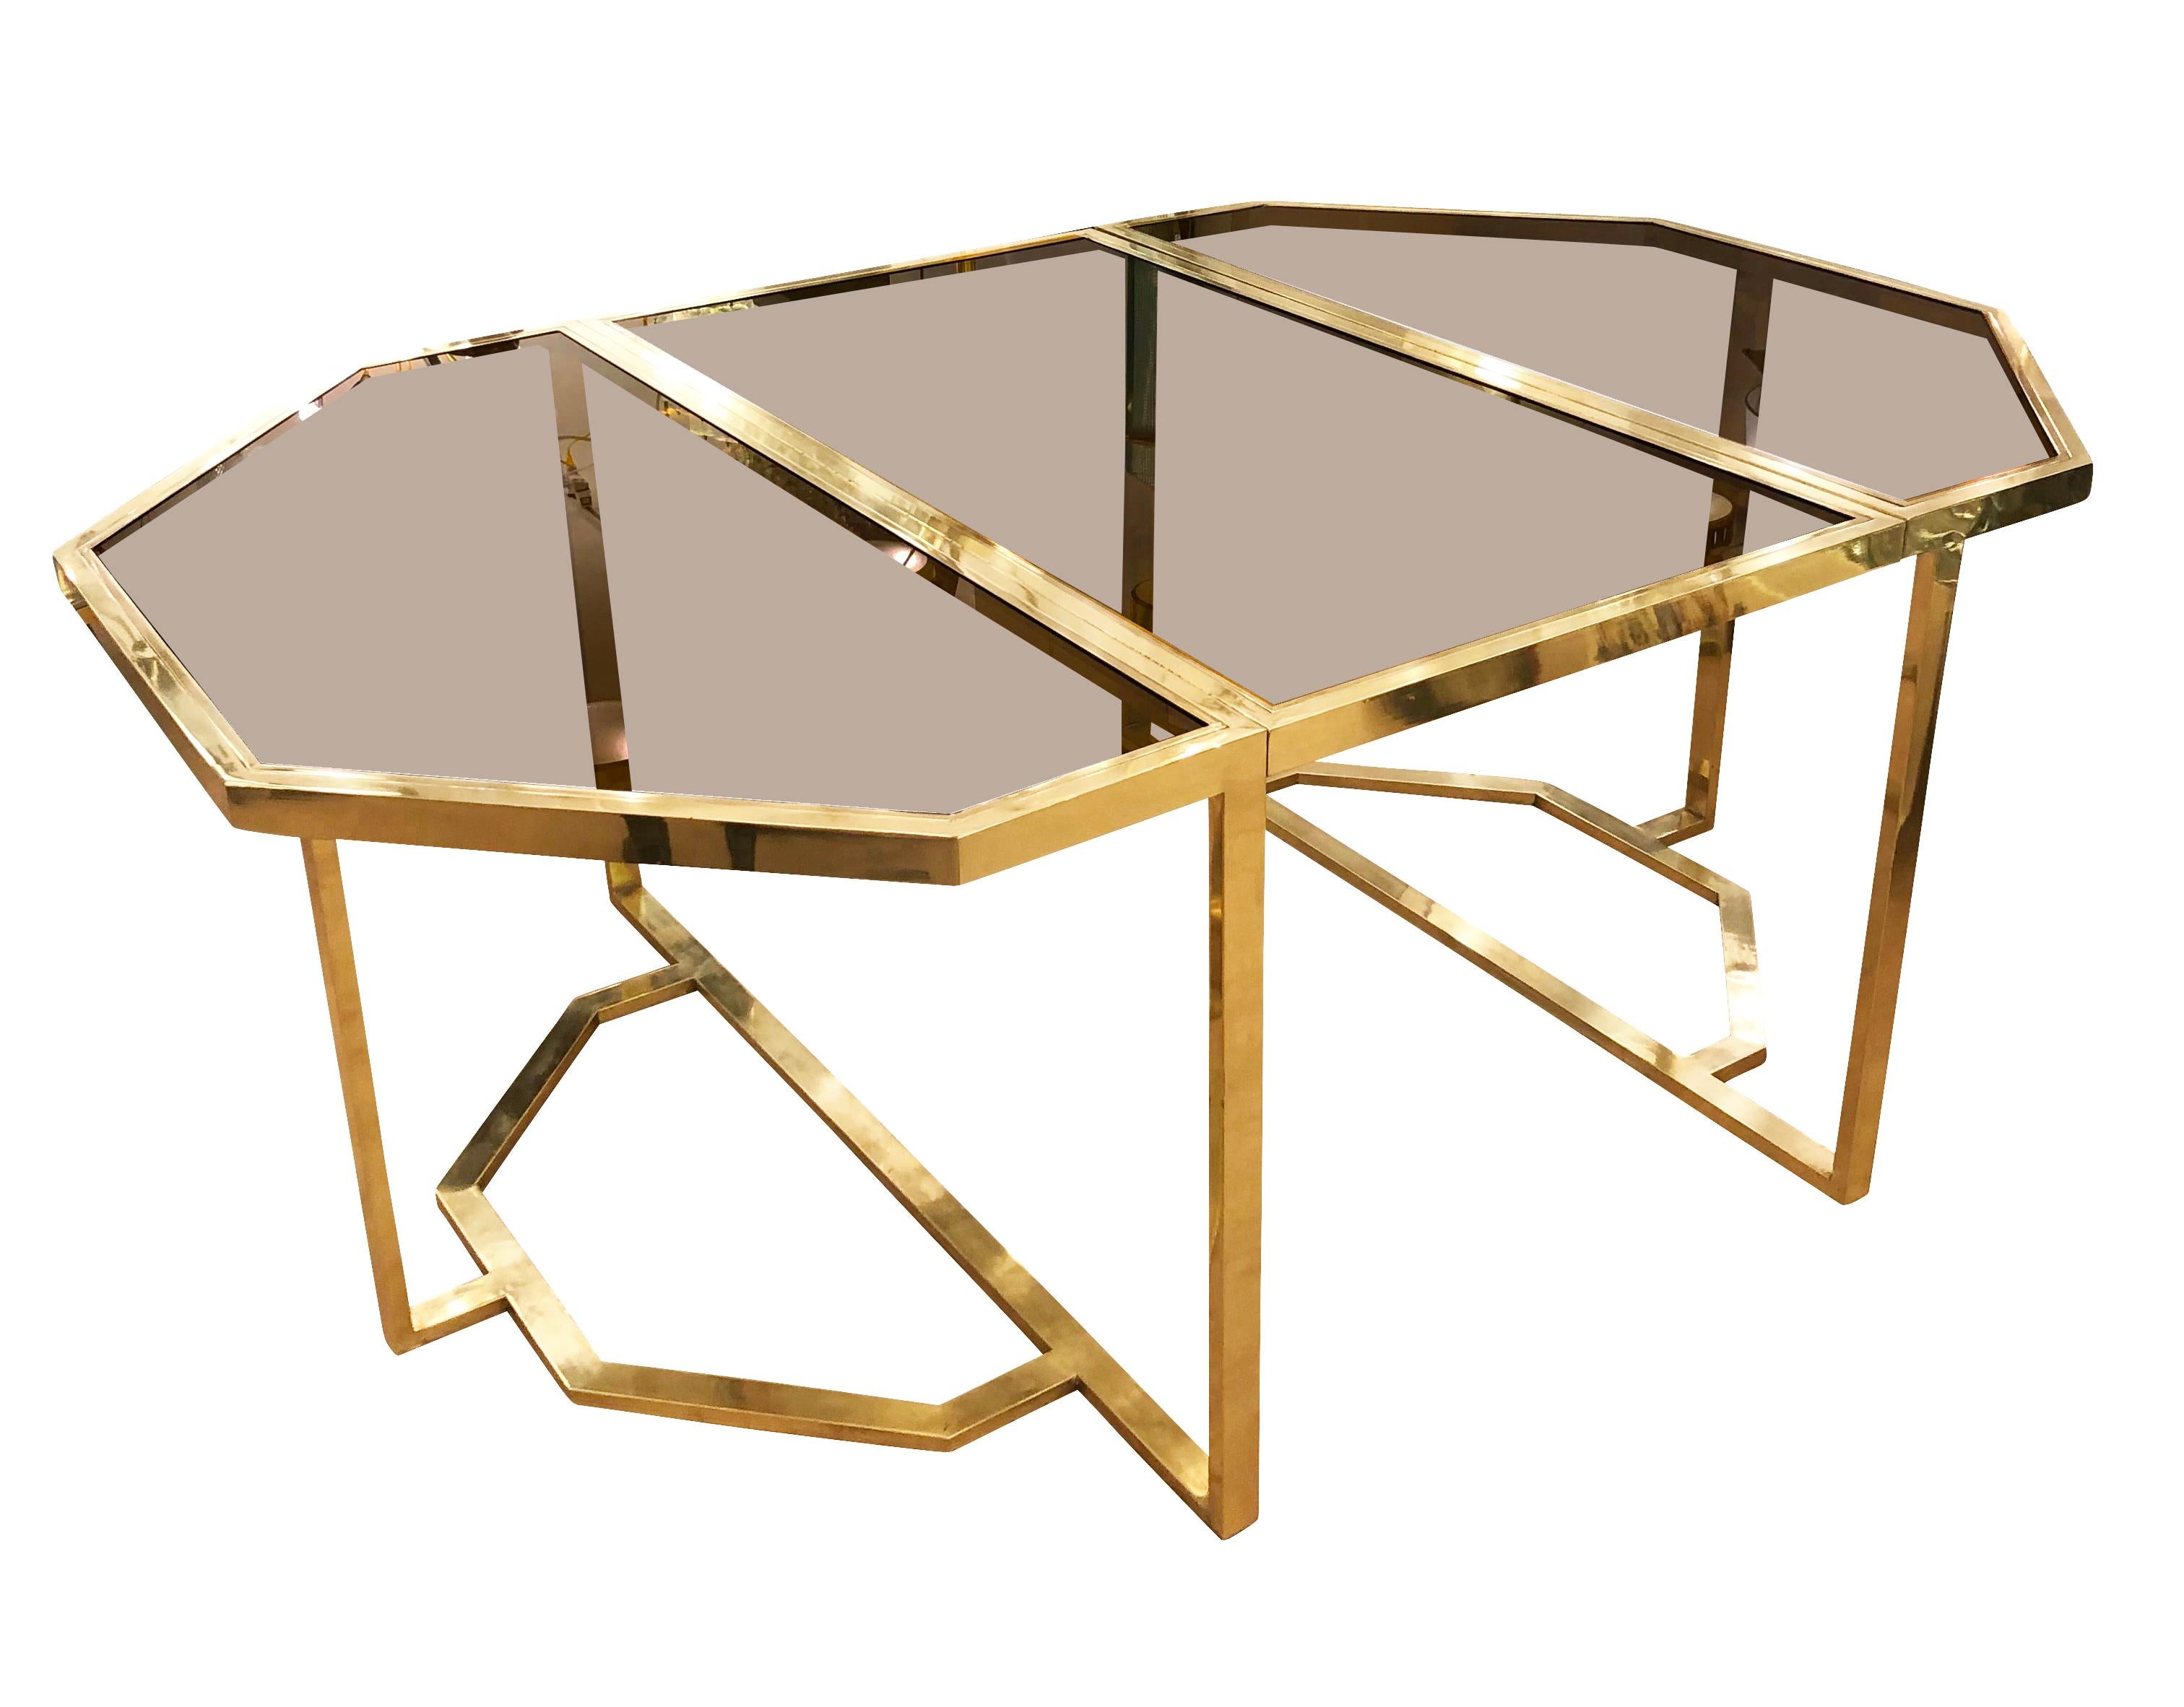 Achteckiger Esstisch von Romeo Rega mit Messingrahmen und Platten aus Rauchglas. In der Mitte befindet sich ein Faltblatt, mit dem das Stück um 28